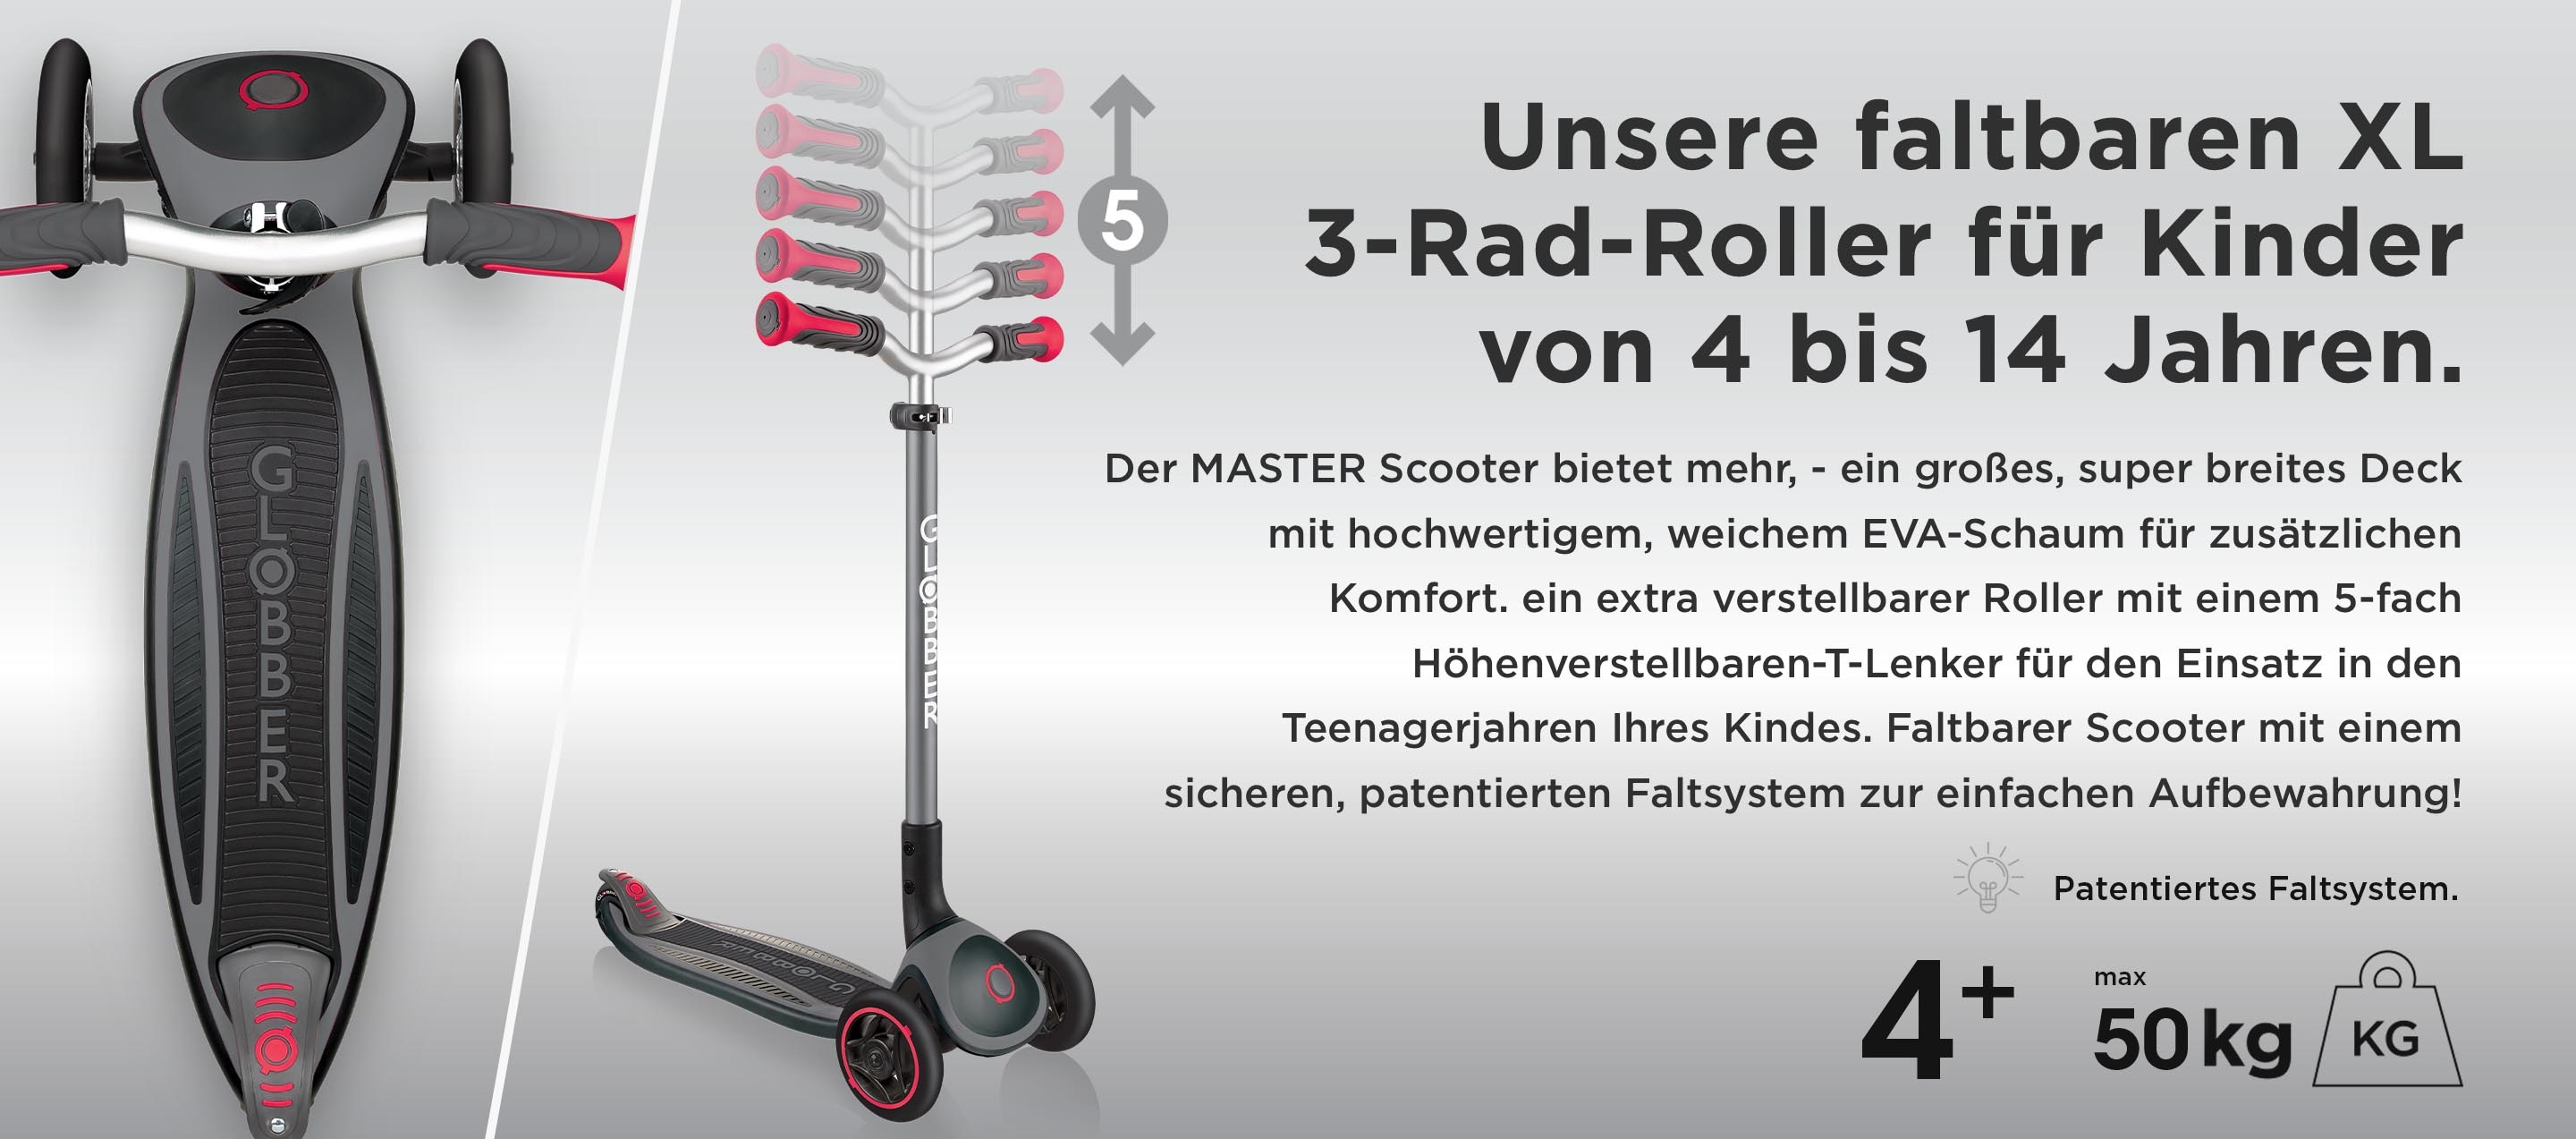 Unsere faltbaren XL 3-Rad-Roller für Kinder von 4 bis 14 Jahren. Der MASTER Scooter bietet mehr, - ein großes, super breites Deck mit hochwertigem, weichem EVA-Schaum für zusätzlichen Komfort. ein extra verstellbarer Roller mit einem 5-fach Höhenverstellbaren-T-Lenker für den Einsatz in den Teenagerjahren Ihres Kindes. Faltbarer Scooter mit einem sicheren, patentierten Faltsystem zur einfachen Aufbewahrung!